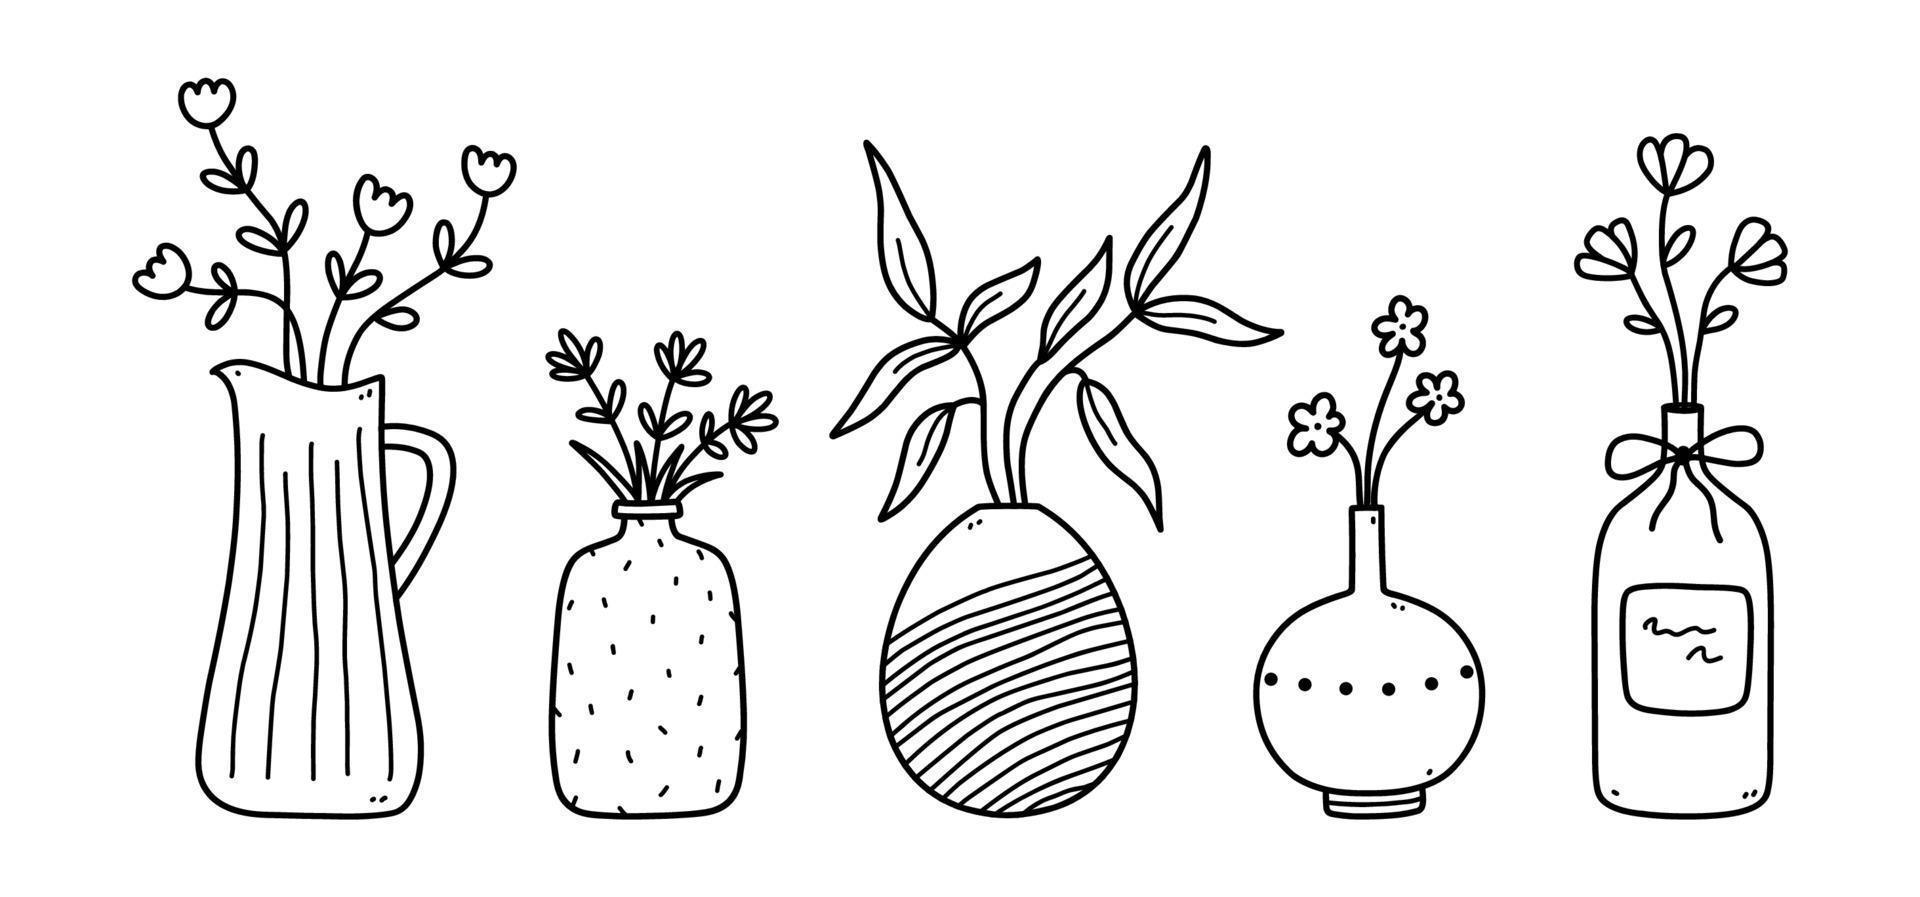 ensemble de jolies fleurs et brindilles dans des vases en céramique isolés sur fond blanc. illustration vectorielle dessinée à la main dans un style doodle. parfait pour les cartes, les décorations, le logo. vecteur